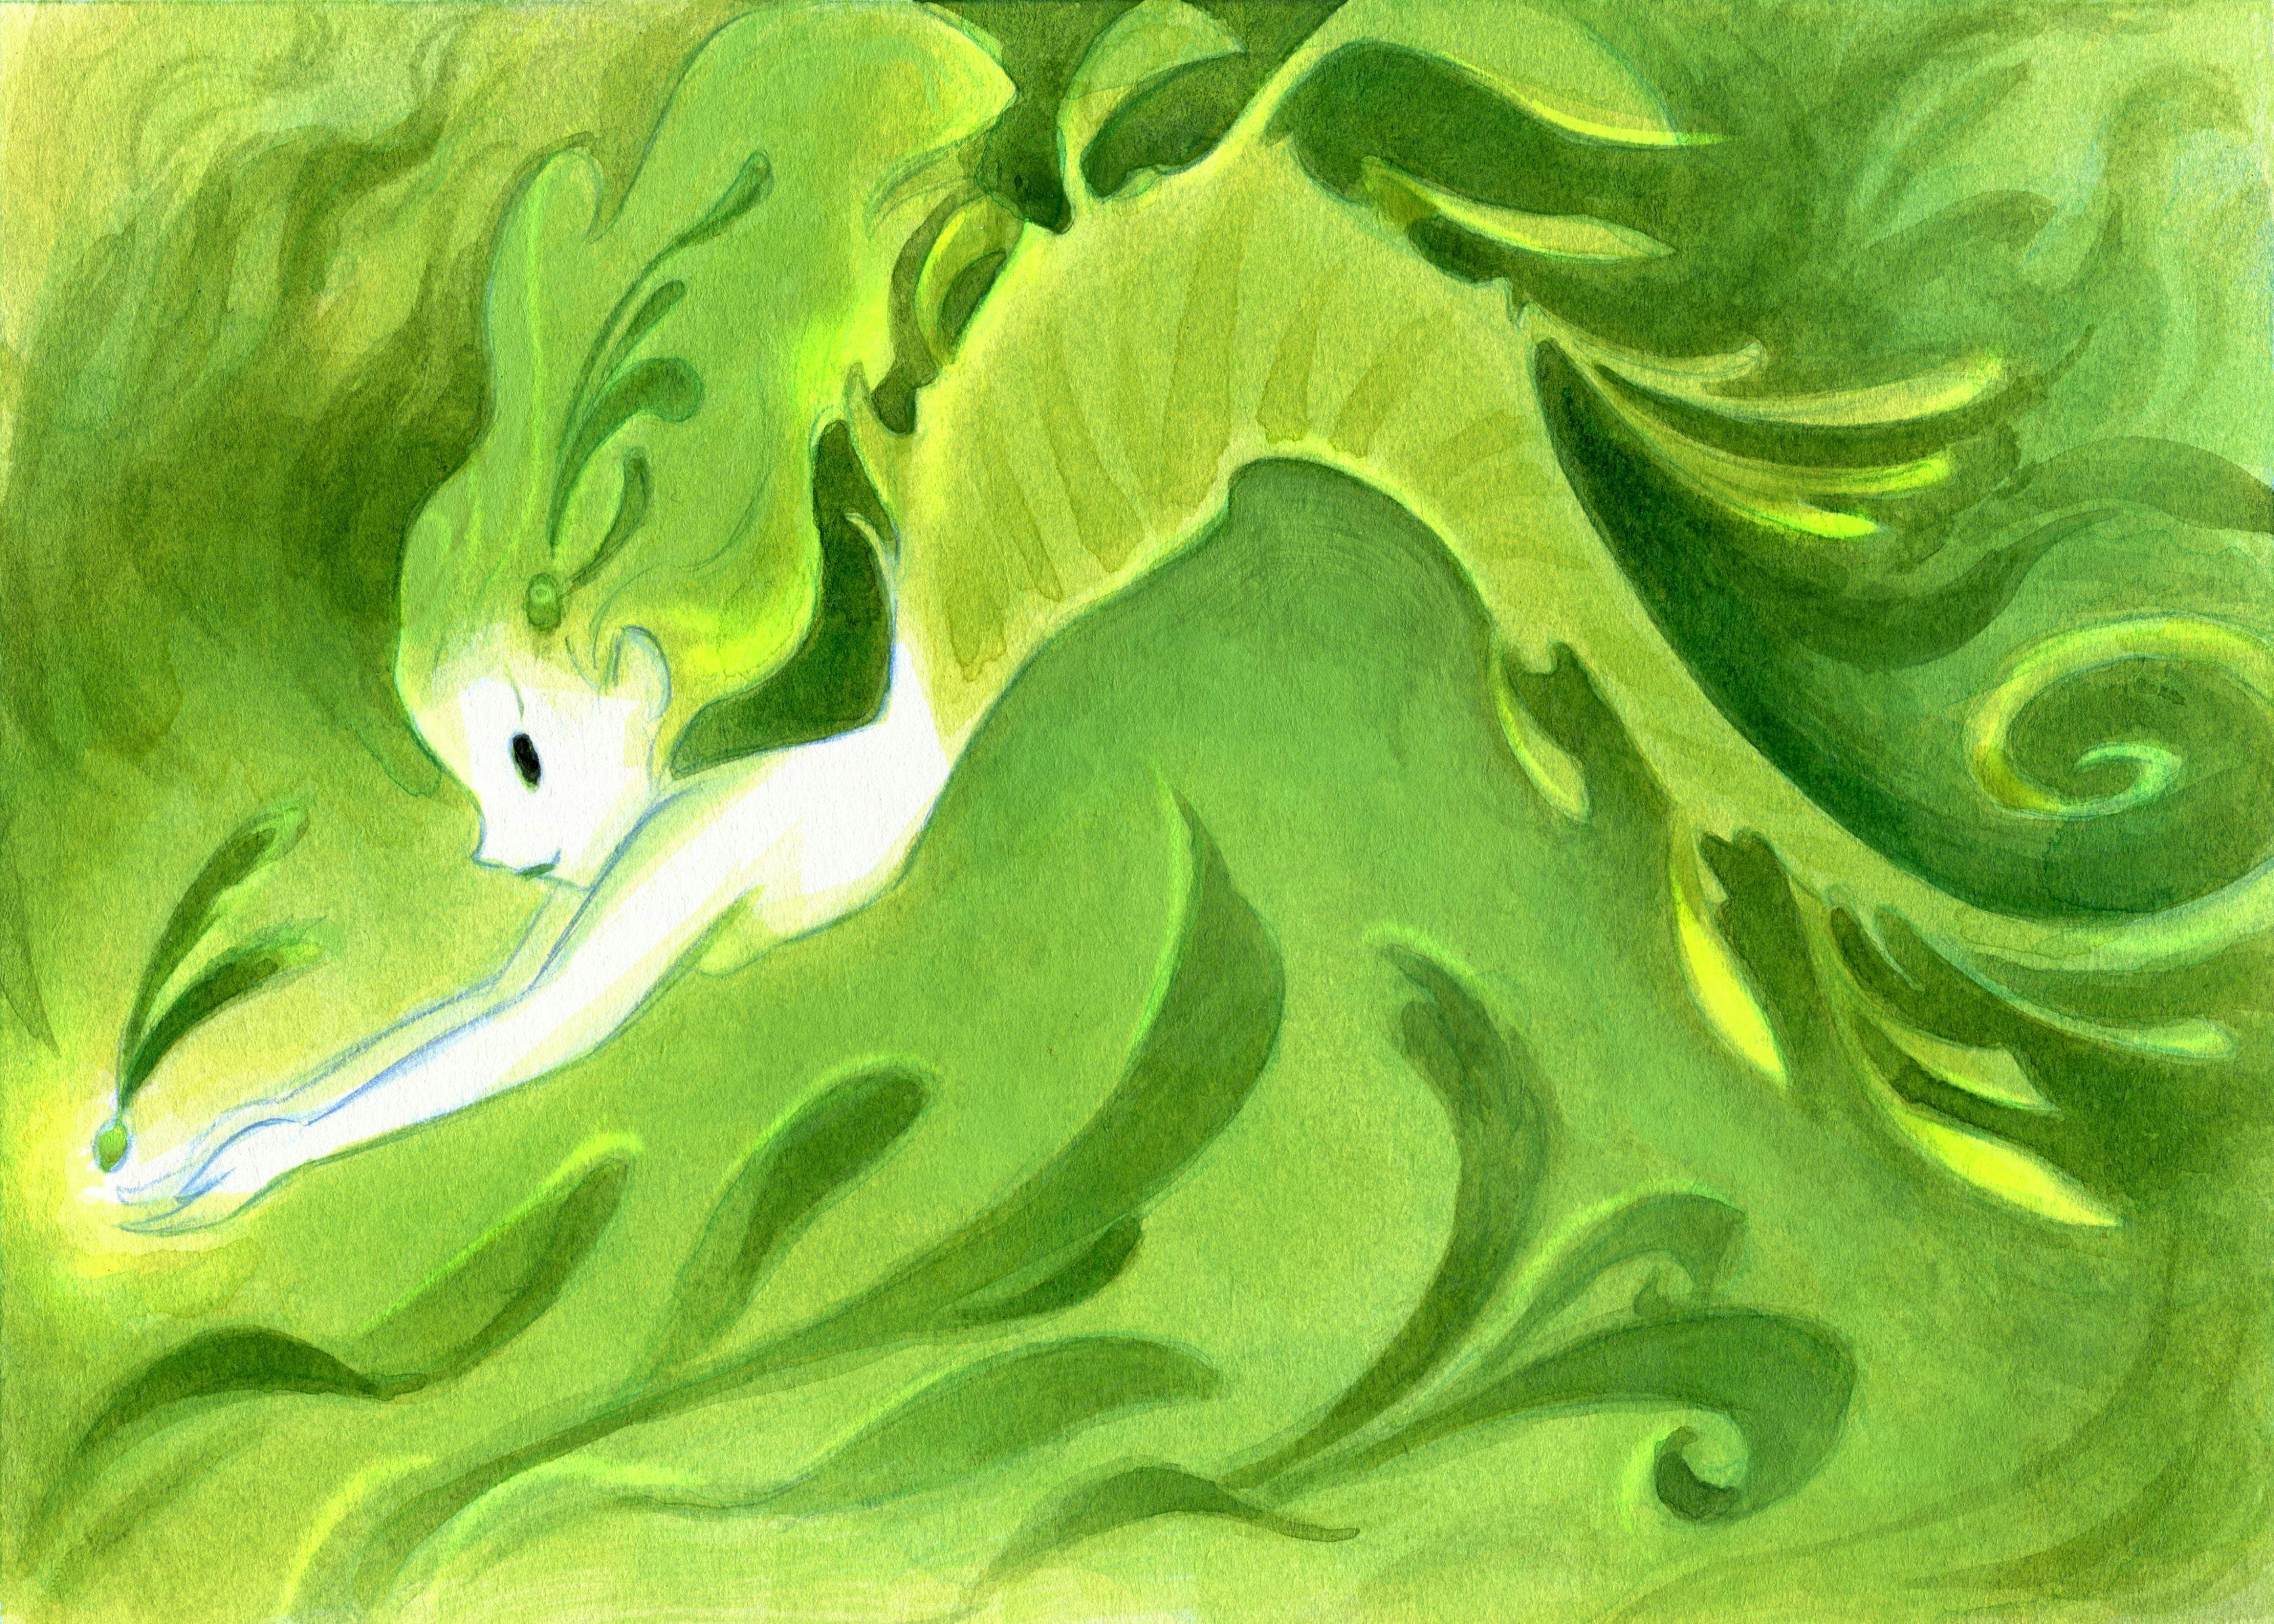 A sea dragon faerie